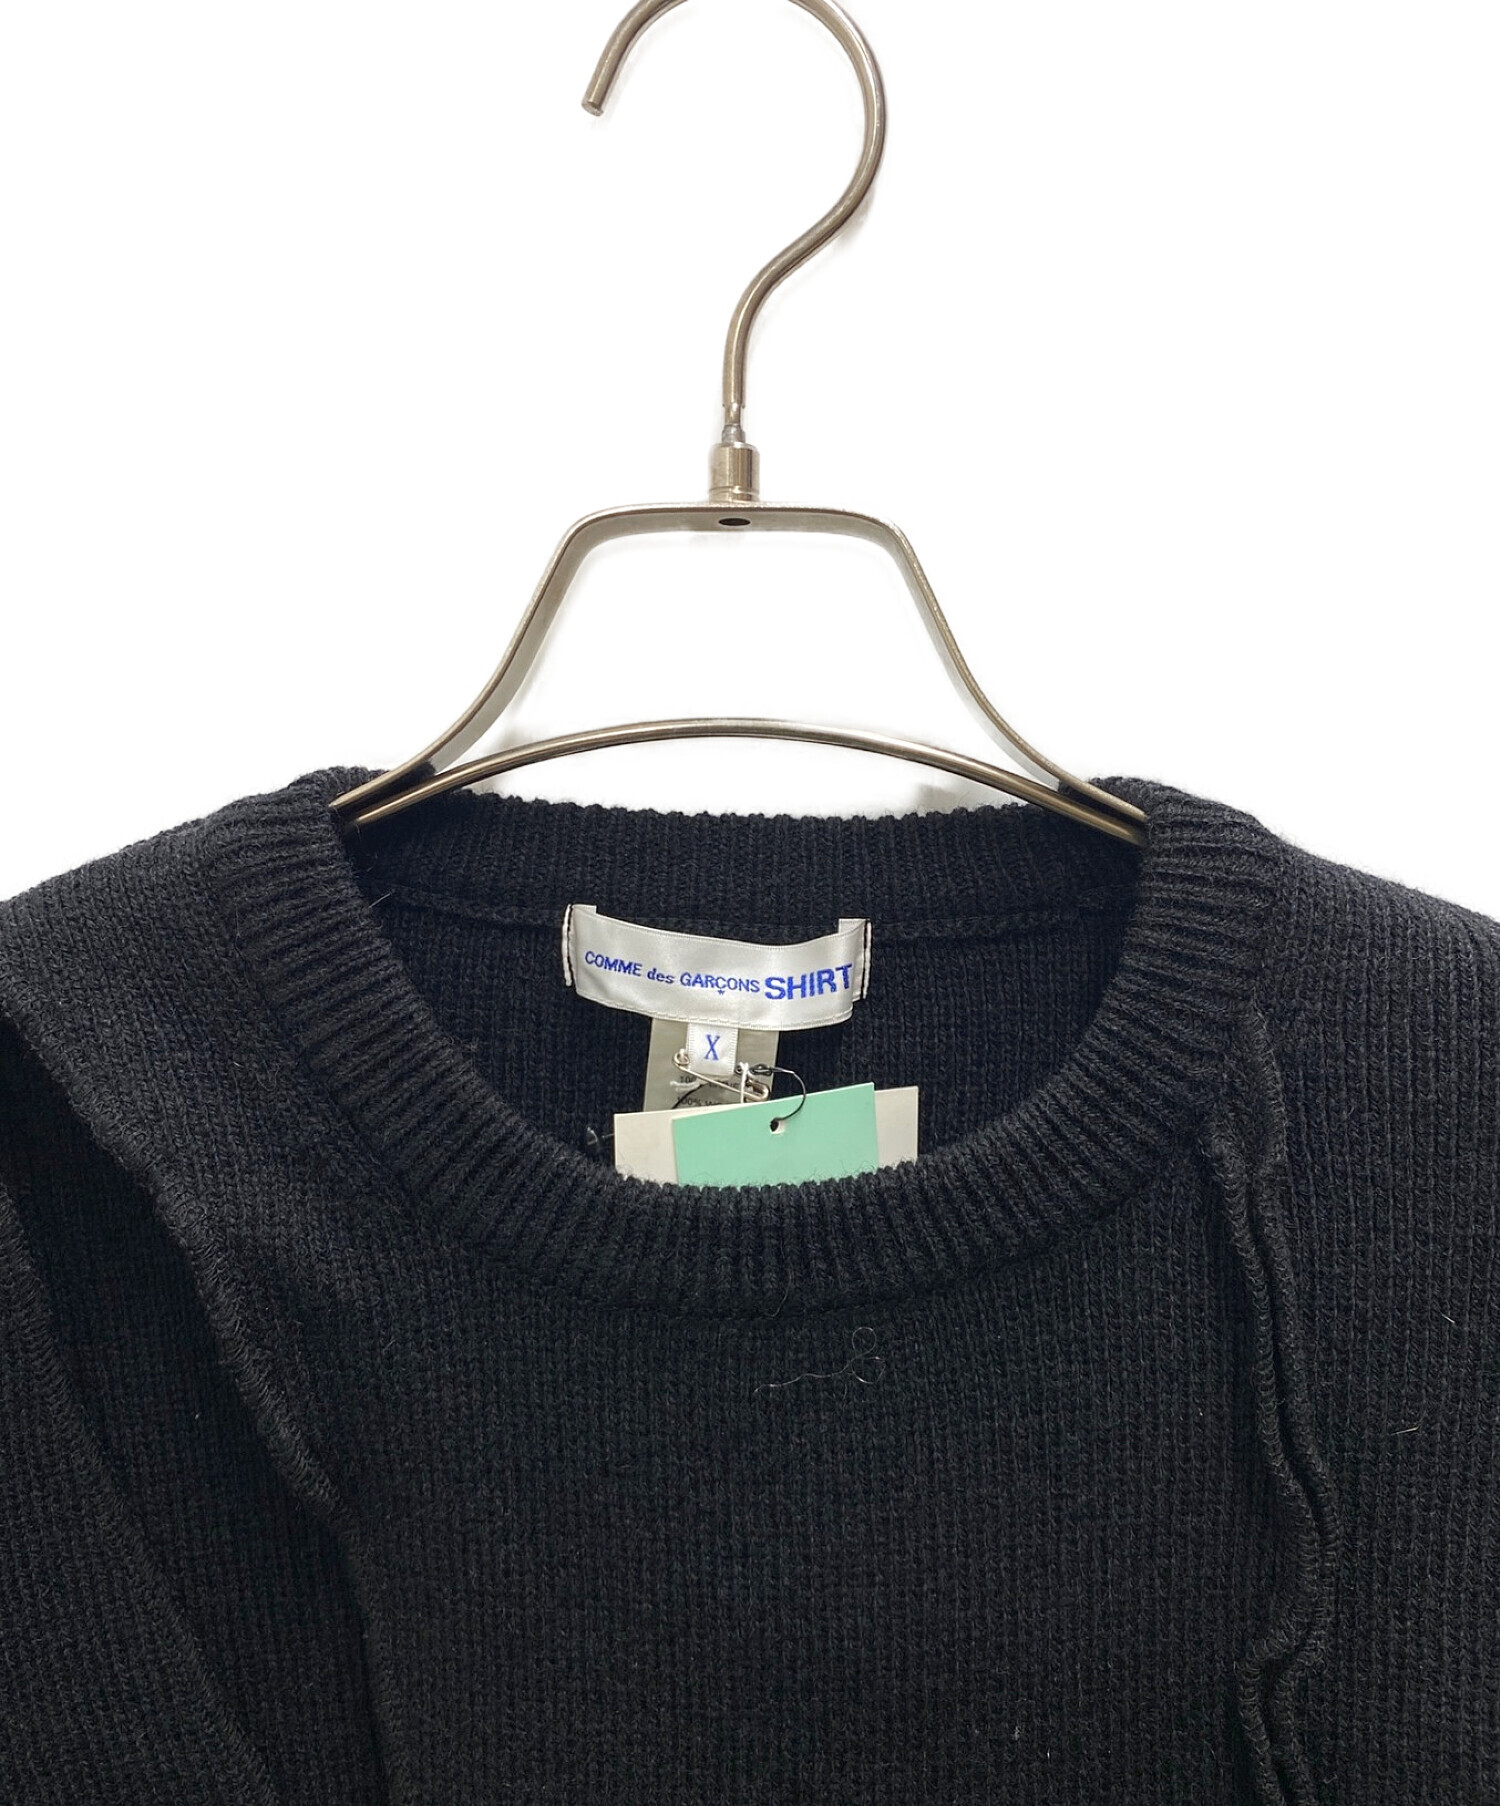 COMME des GARCONS SHIRT (コムデギャルソンシャツ) カッティングデザインニットセーター ブラック サイズ:x